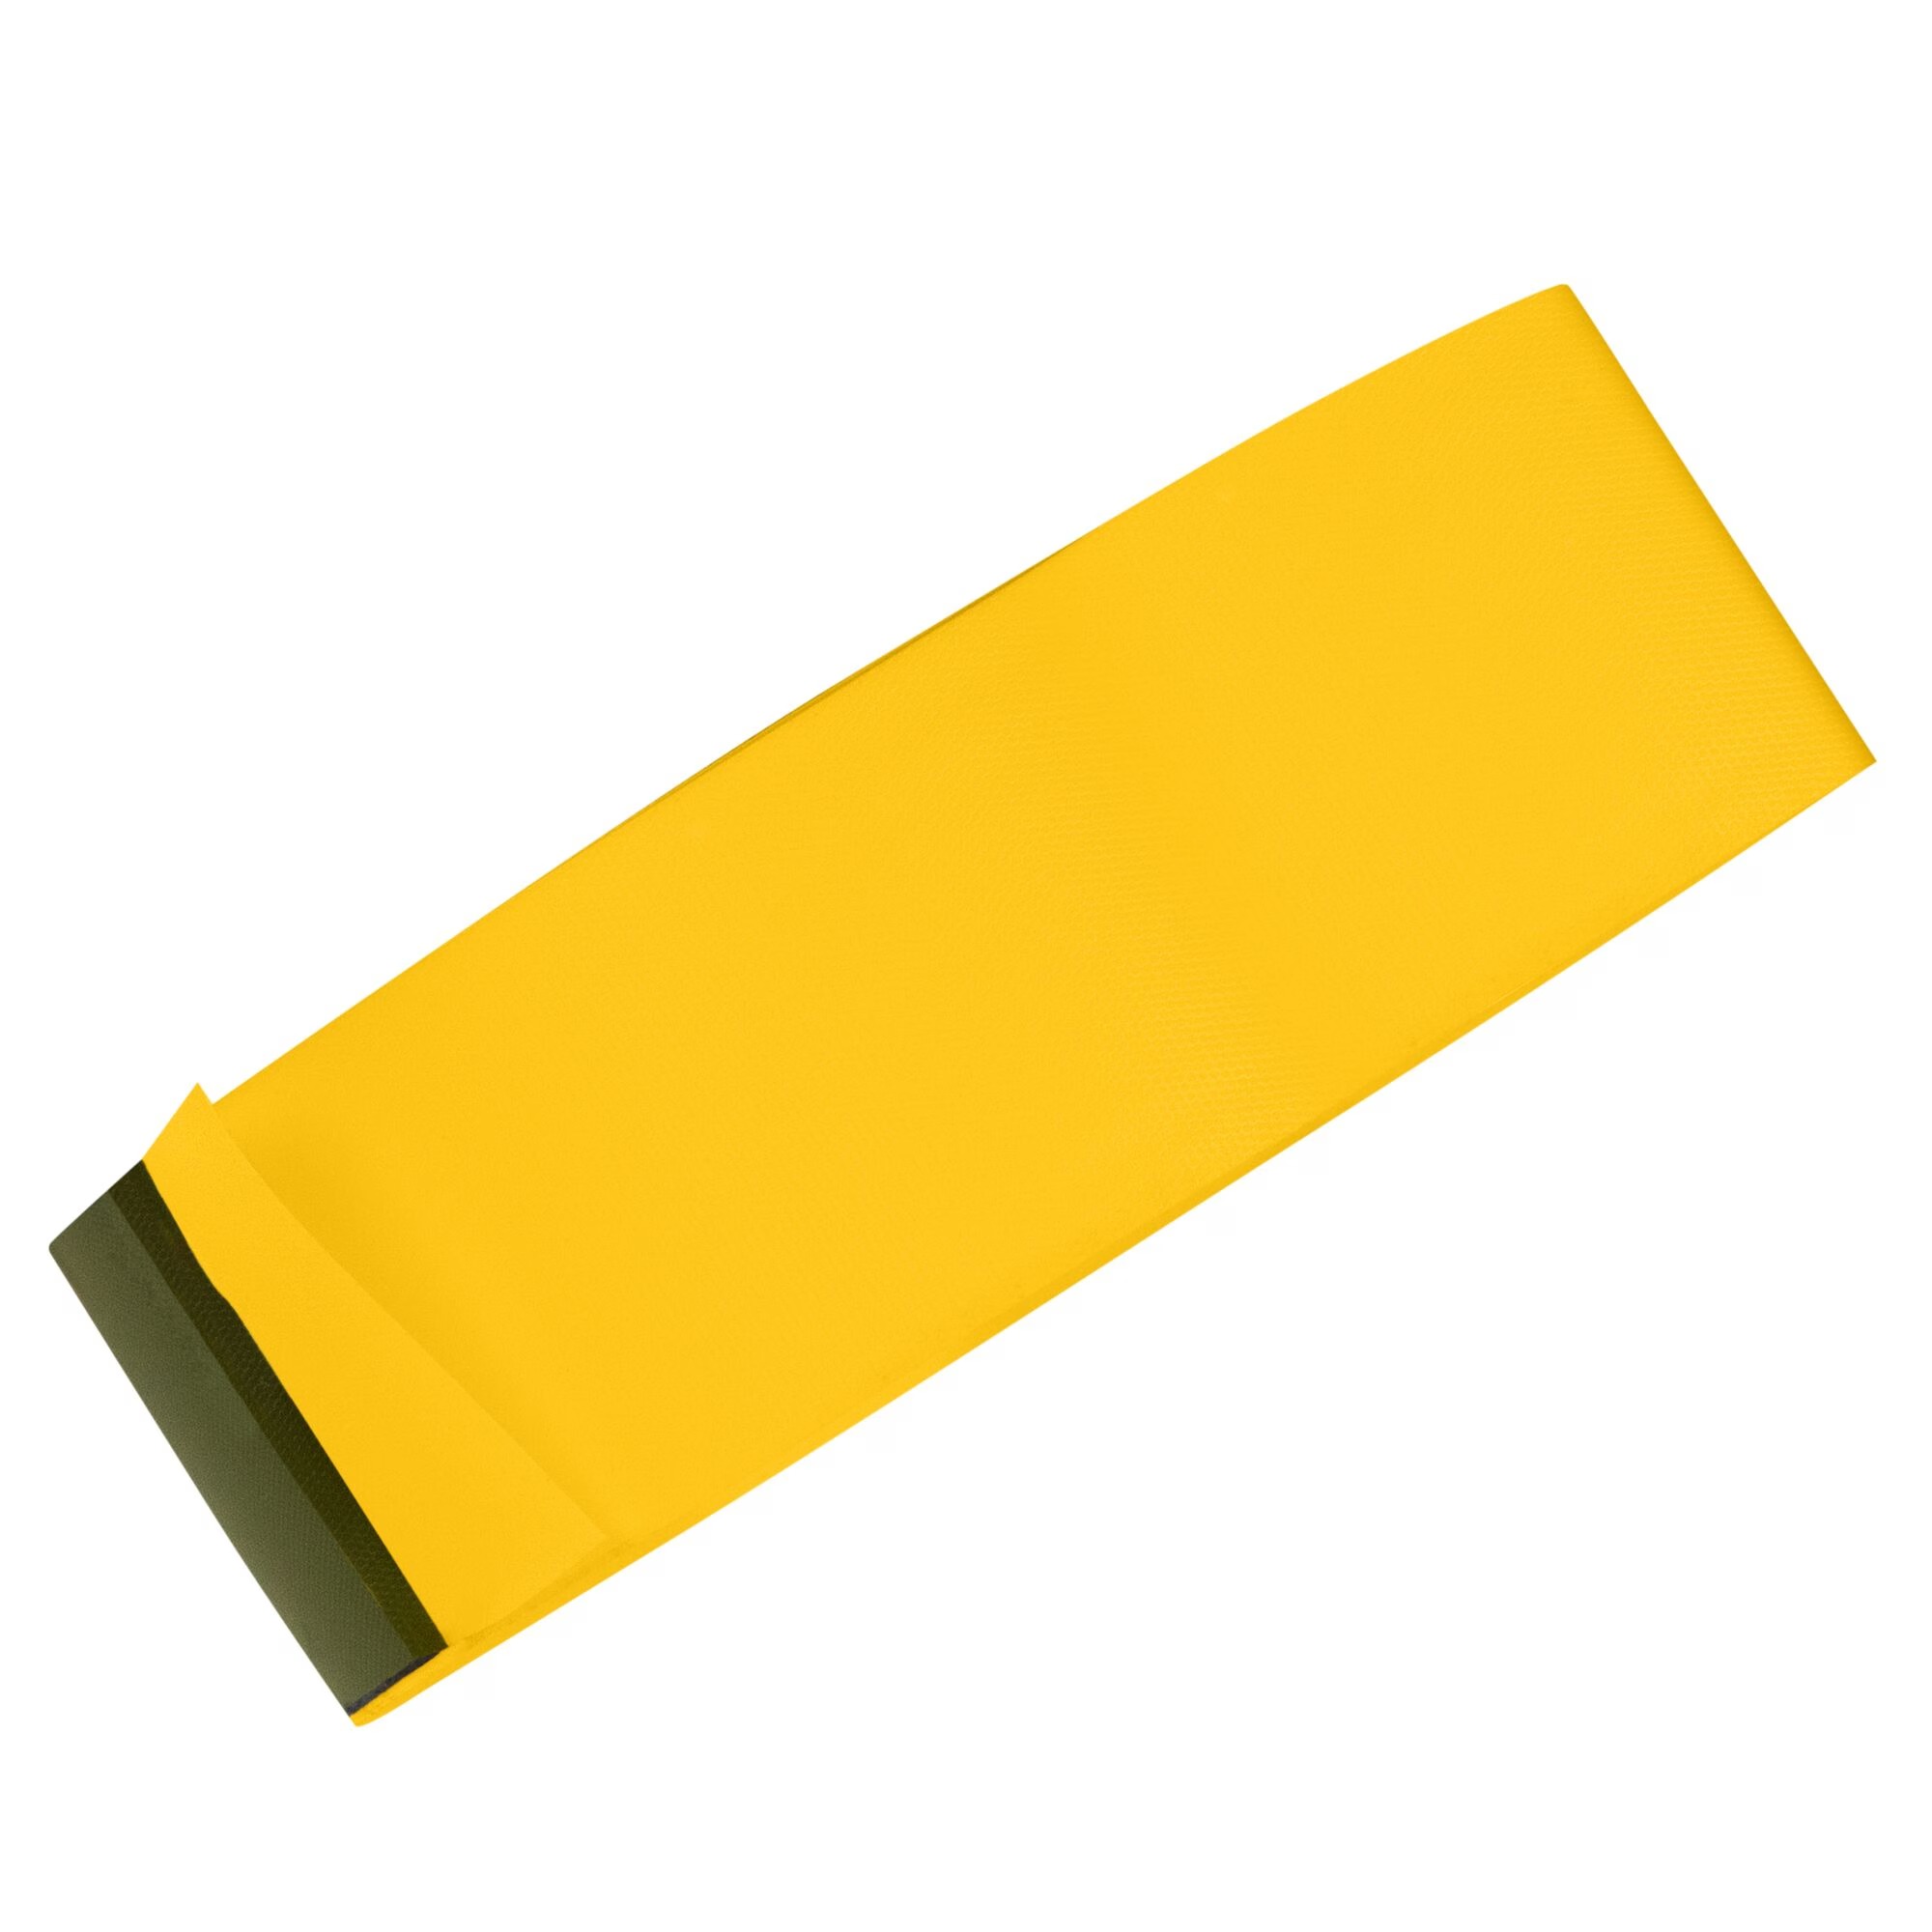 Hình ảnh 1 của mặt hàng Băng dính PVC màu vàng đậm Irwin